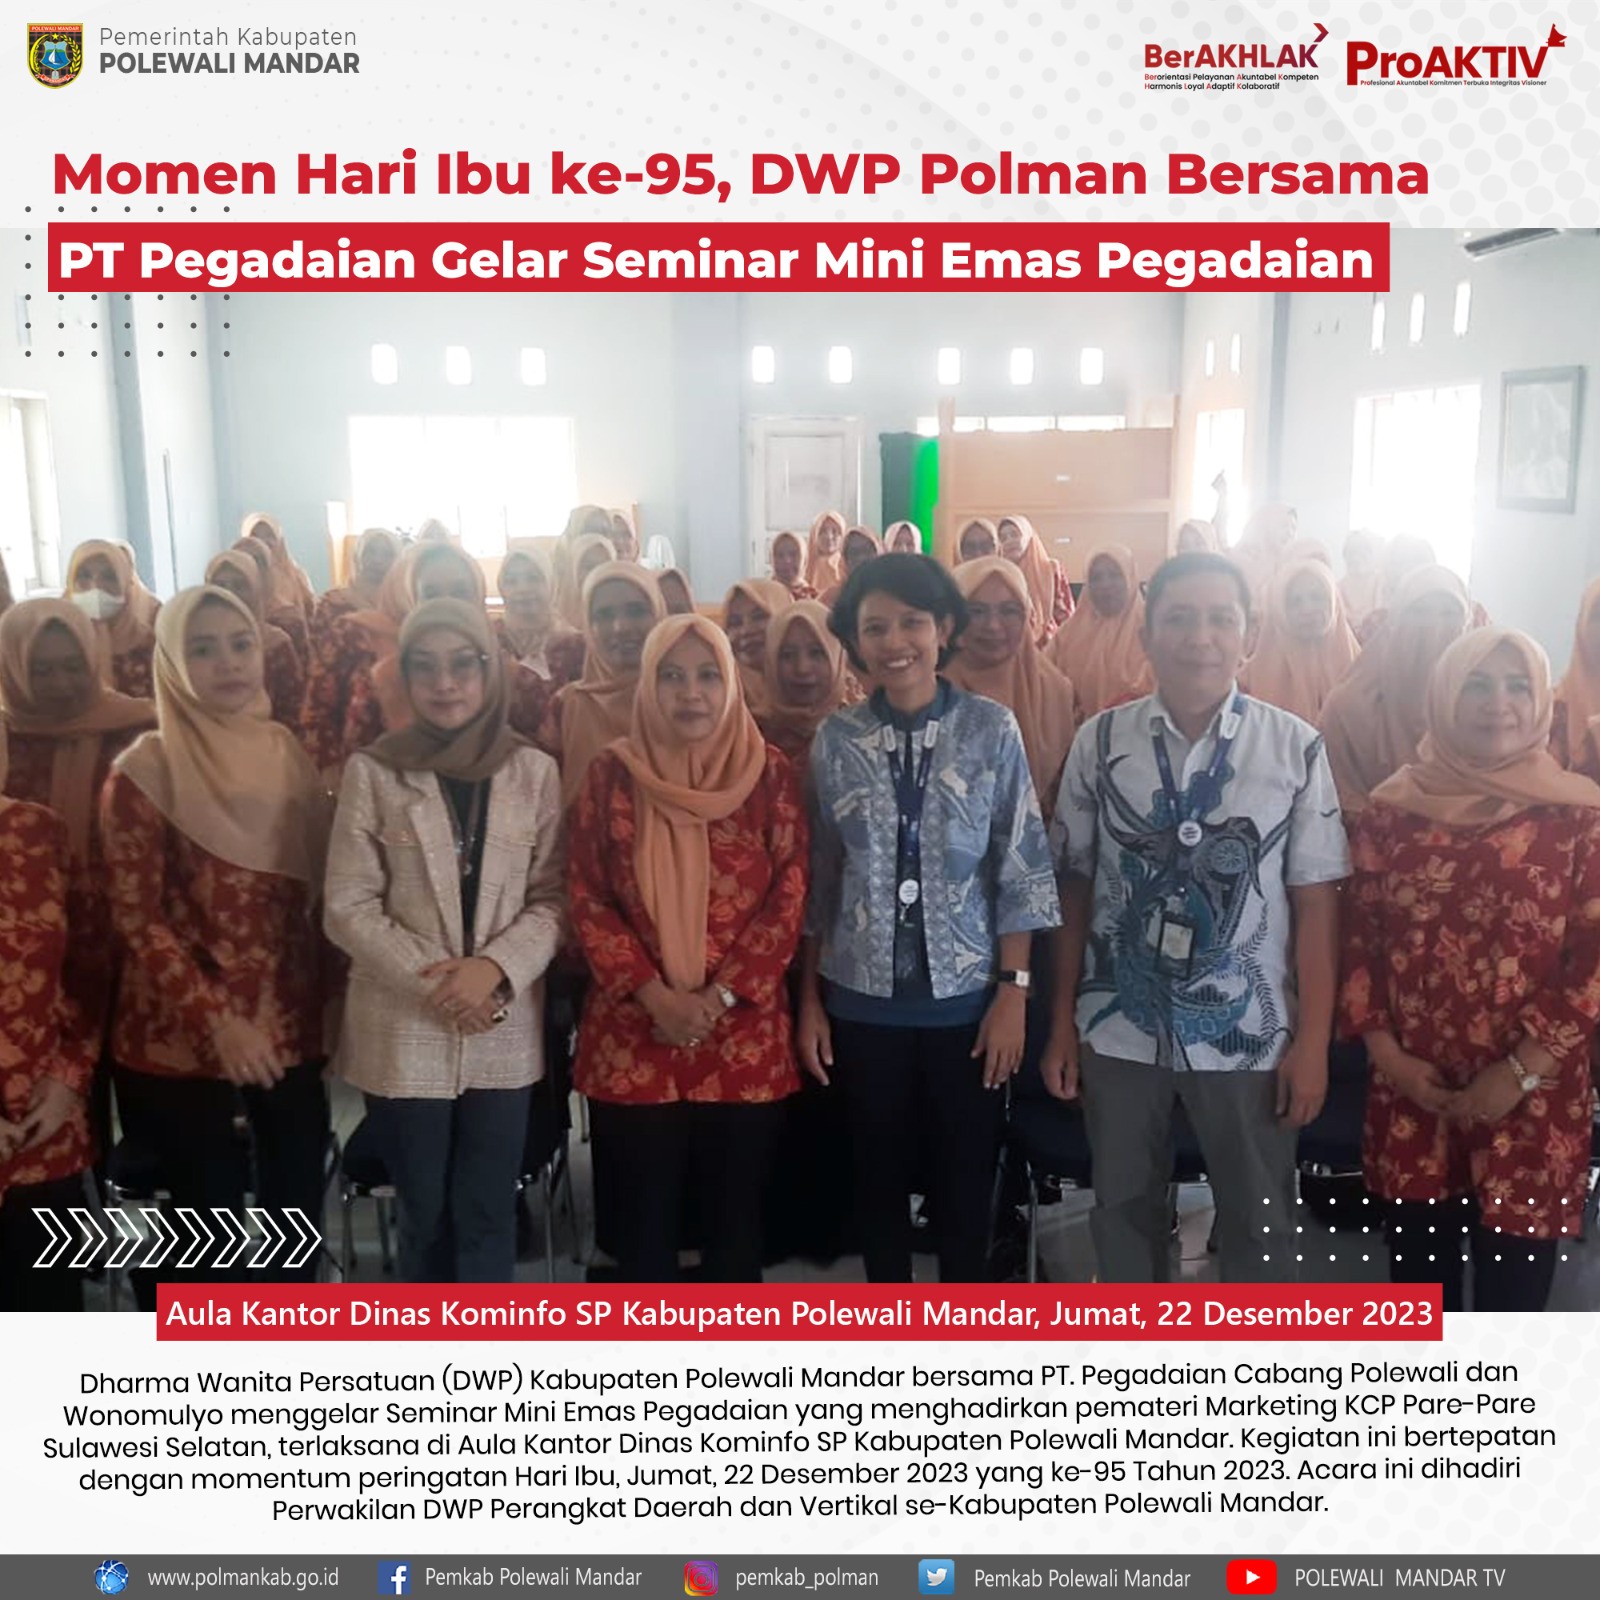 Momen Hari Ibu ke-95, DWP Polman Bersama PT Pegadaian Gelar Seminar Mini Emas Pegadaian 